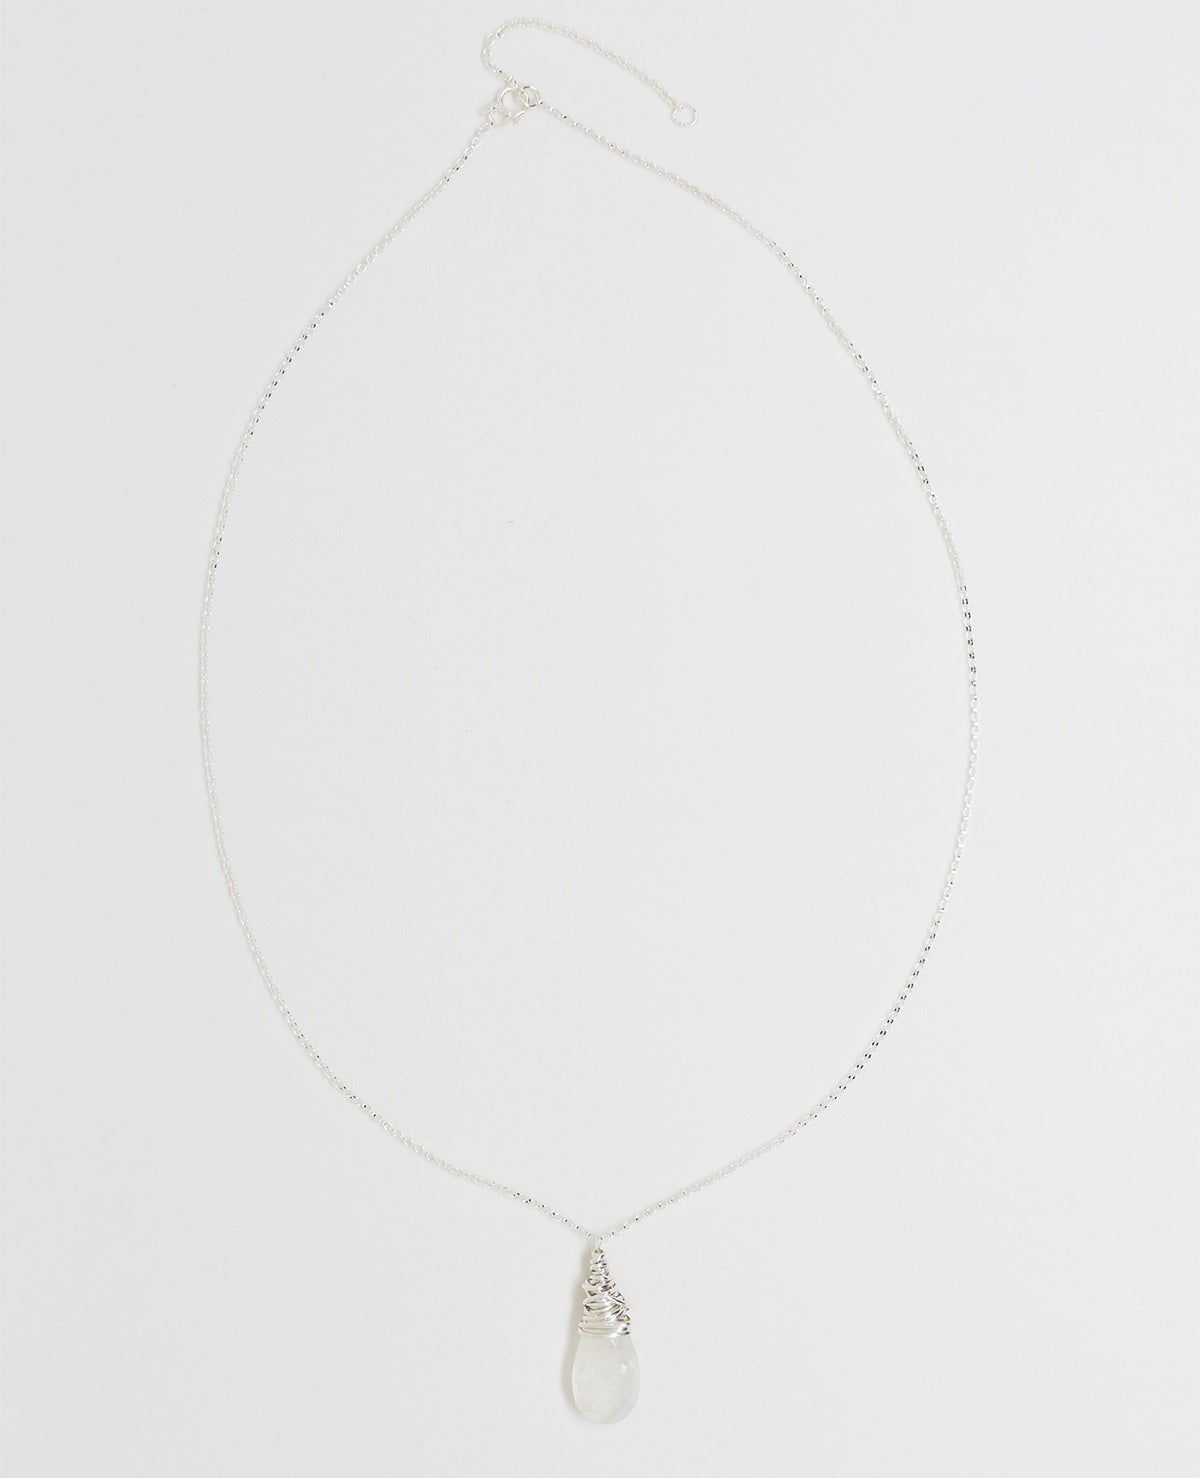 Collier silver petal necklace par Dianne Rodger Jewellery